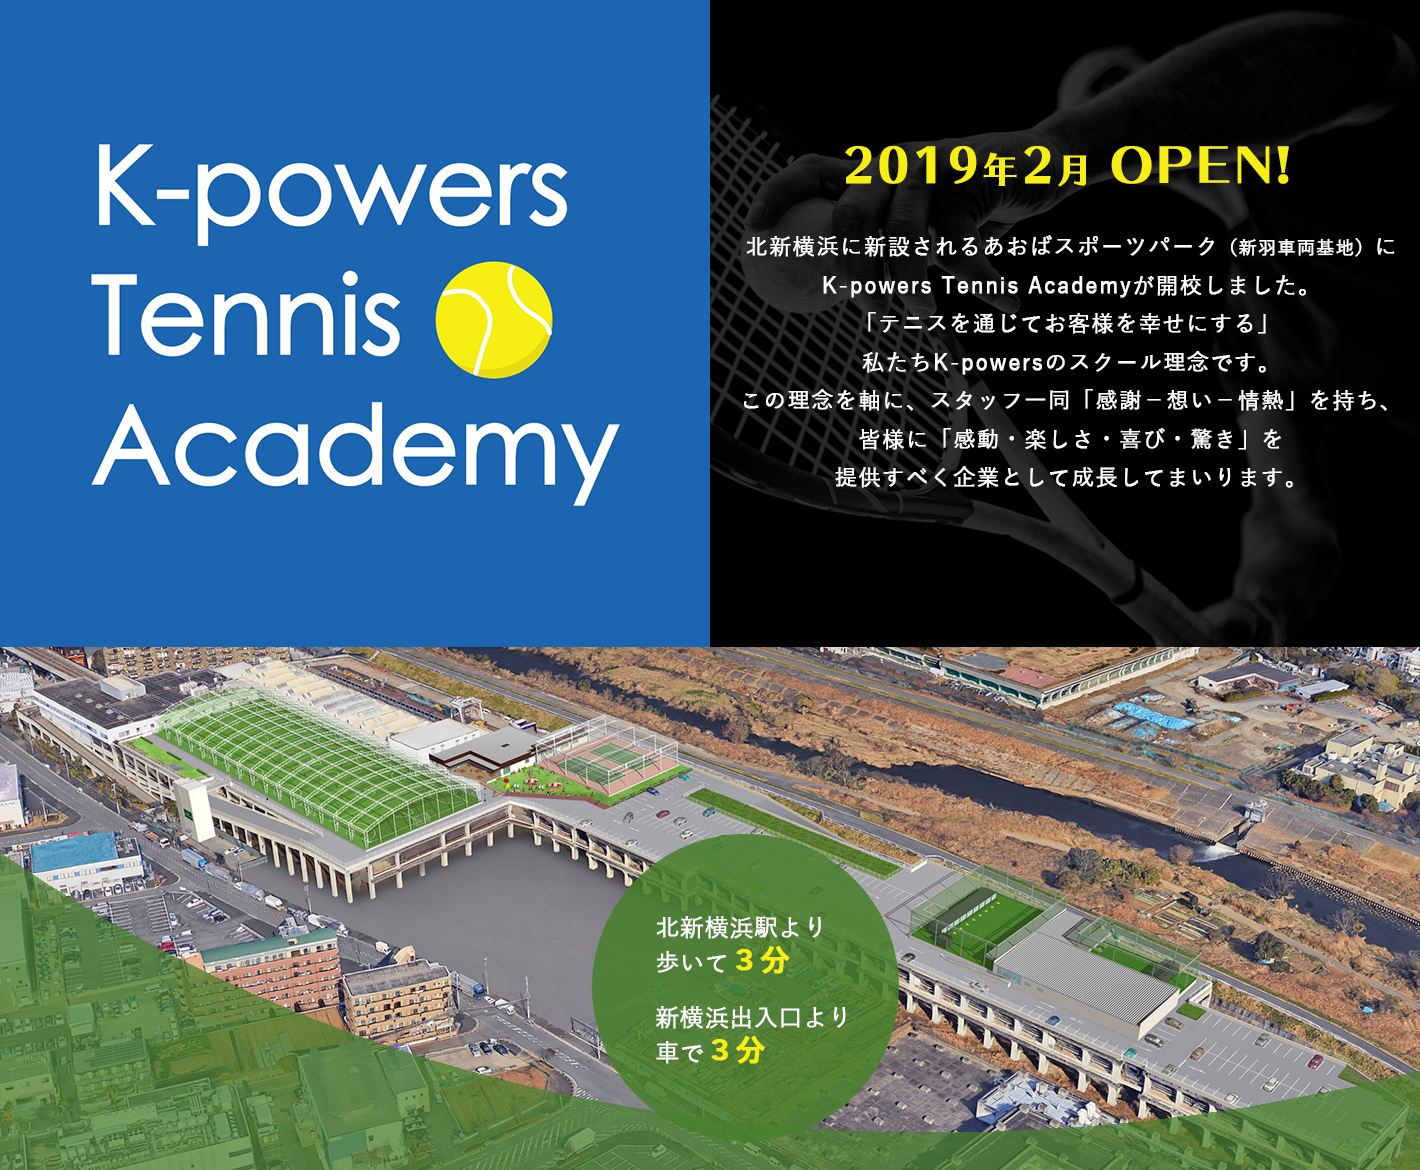 2019年2月OPEN! 北新横浜に新設されるあおばスポーツパーク（新羽車両基地）にK-powers Tennis Academyが開校しました。「テニスを通じてお客様を幸せにする」私たちK-powersのスクール理念です。この理念を軸に、スタッフ一同「感謝－想い－情熱」を持ち、皆様に「感動・楽しさ・喜び・驚き」を提供すべく企業として成長してまいります。